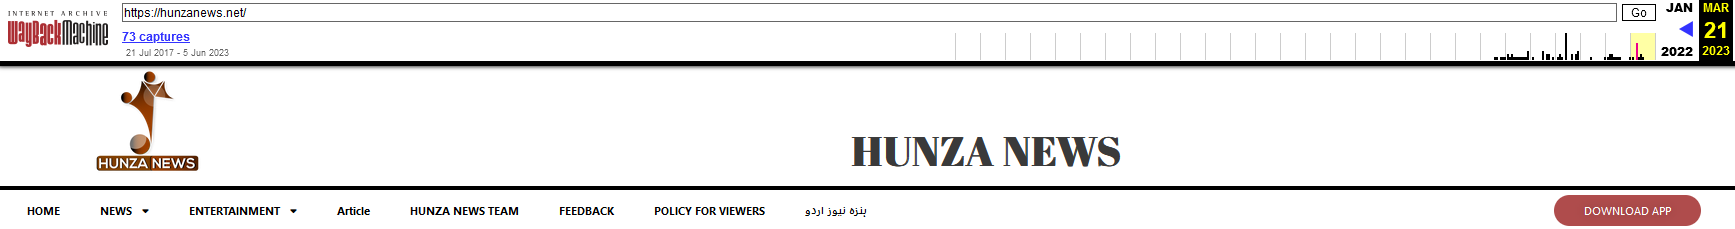 Kuva 5 Hunza News -sivuston lataussovellus palautettu